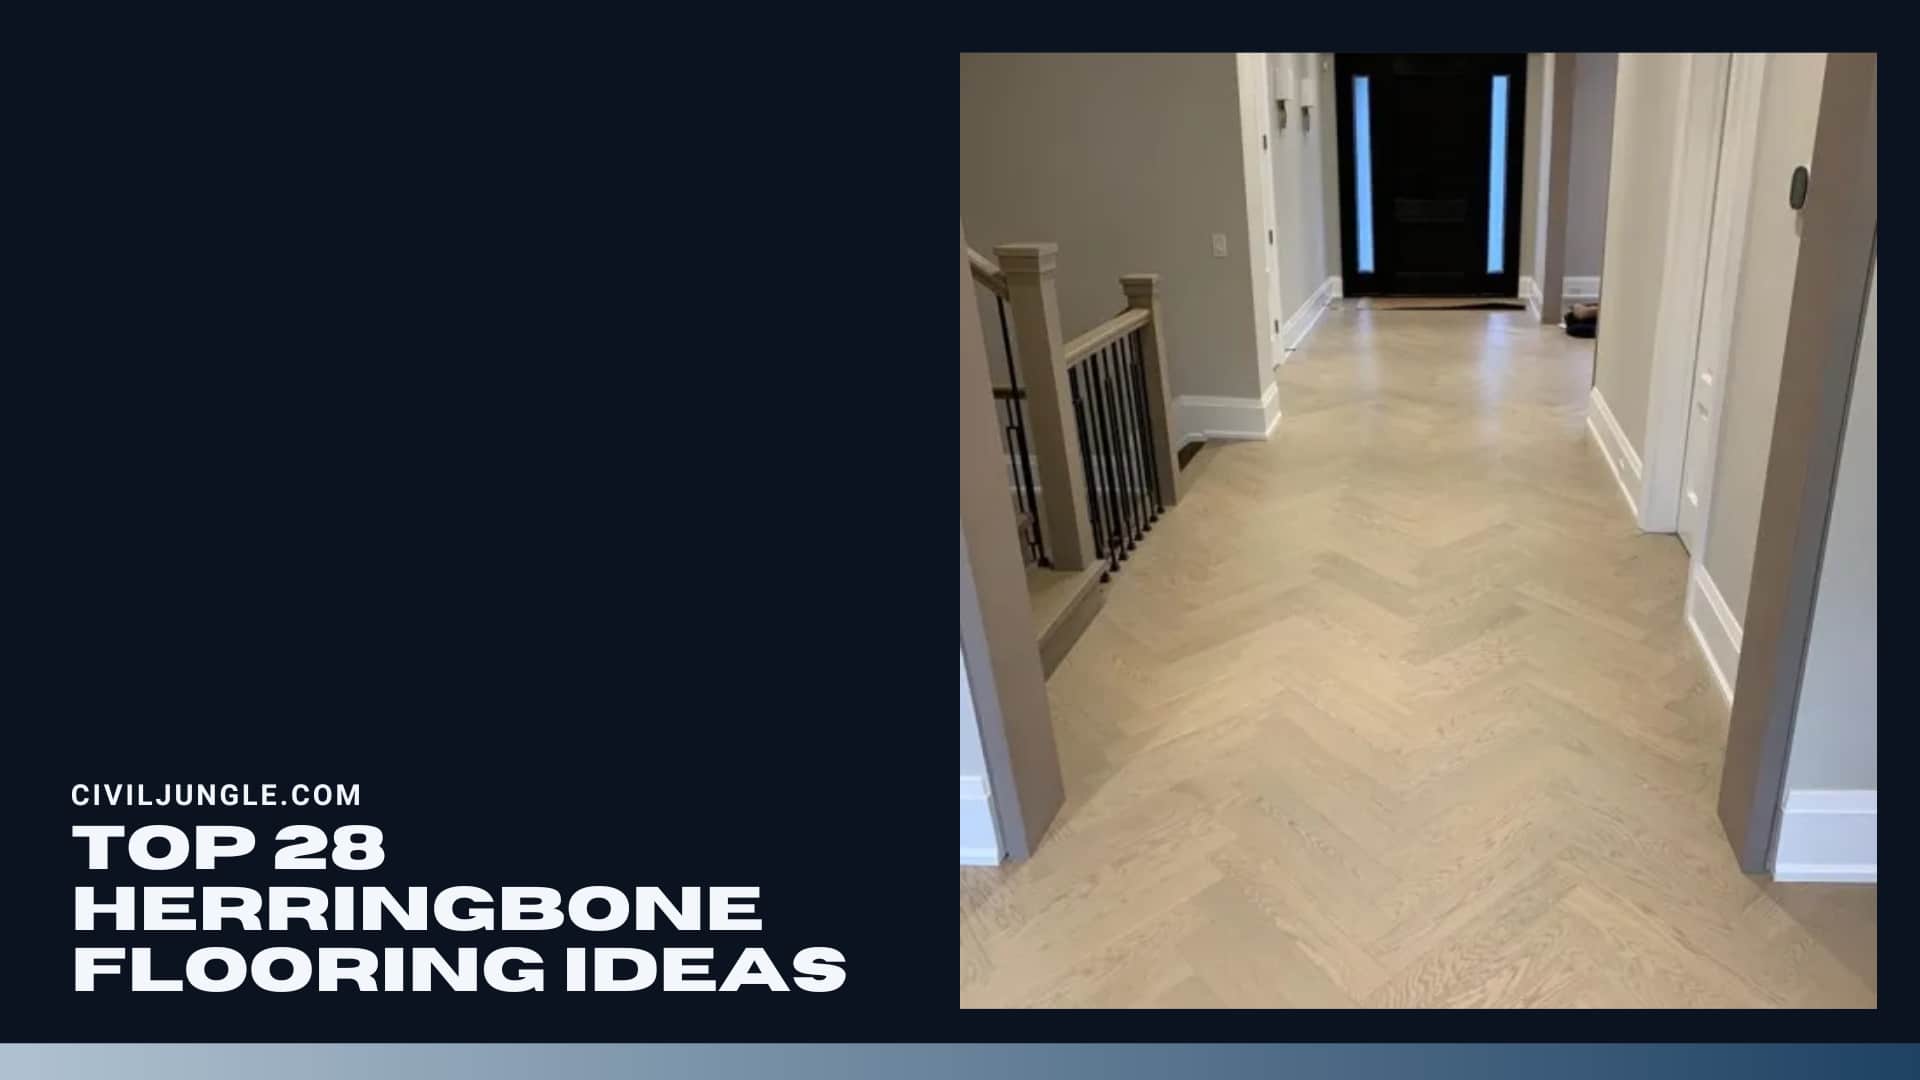 Top 28 Herringbone Flooring Ideas